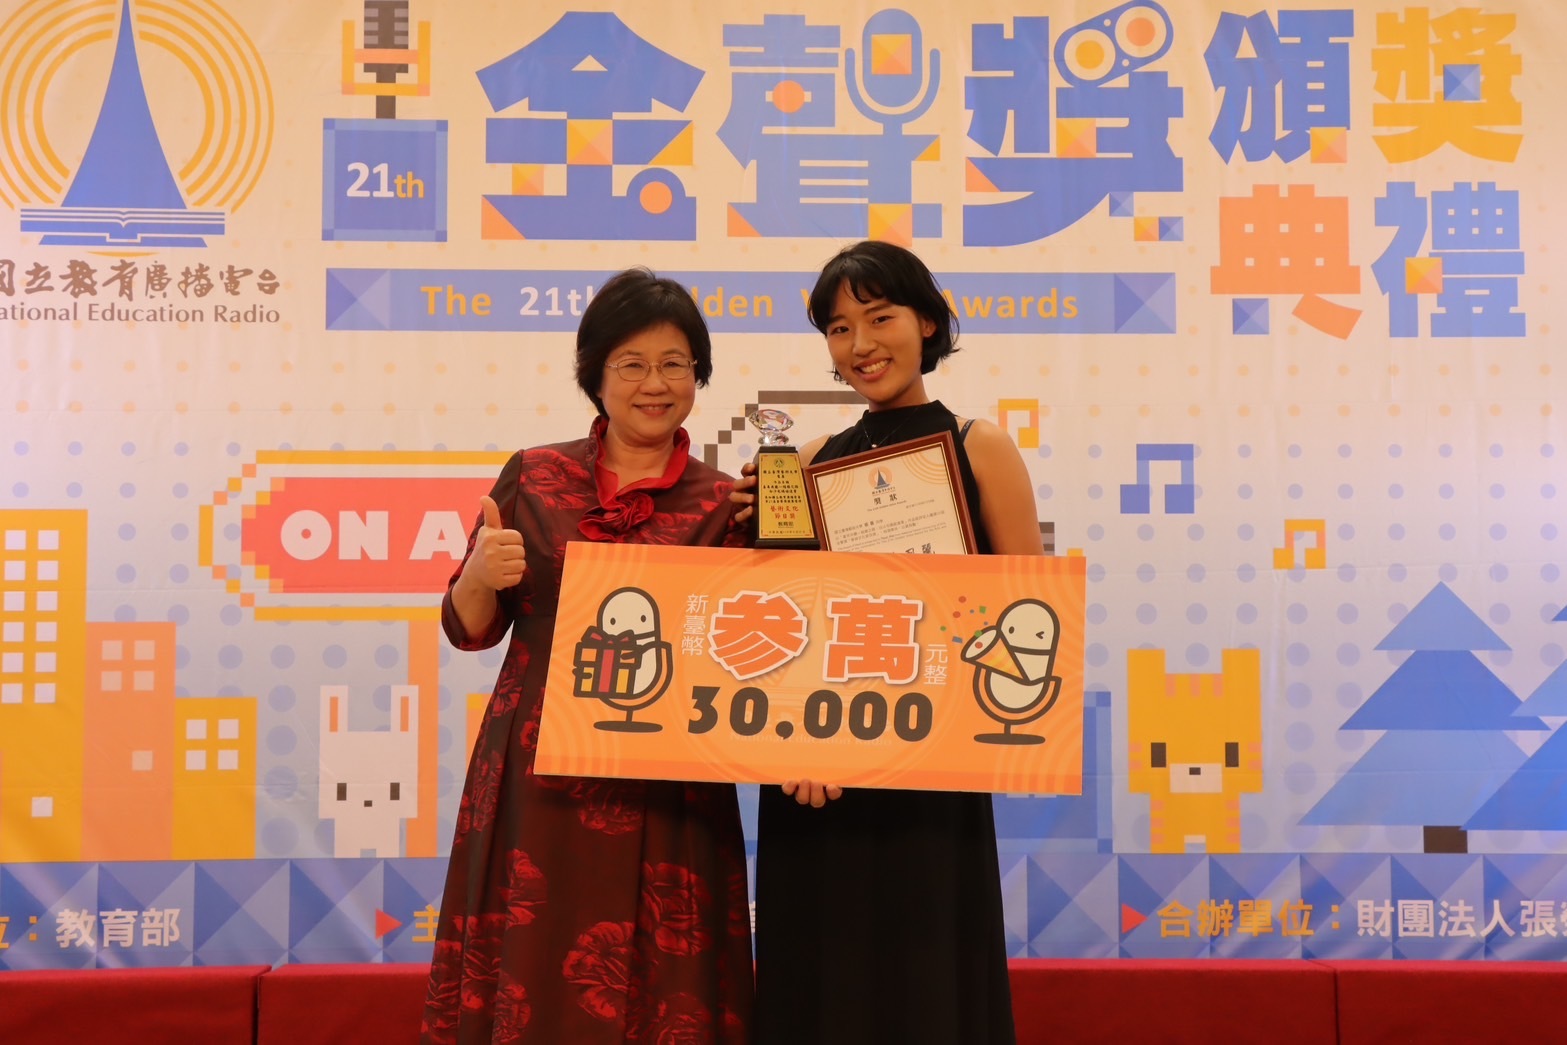 教育電臺黃月麗臺長(左)頒發獎項給獲獎同學